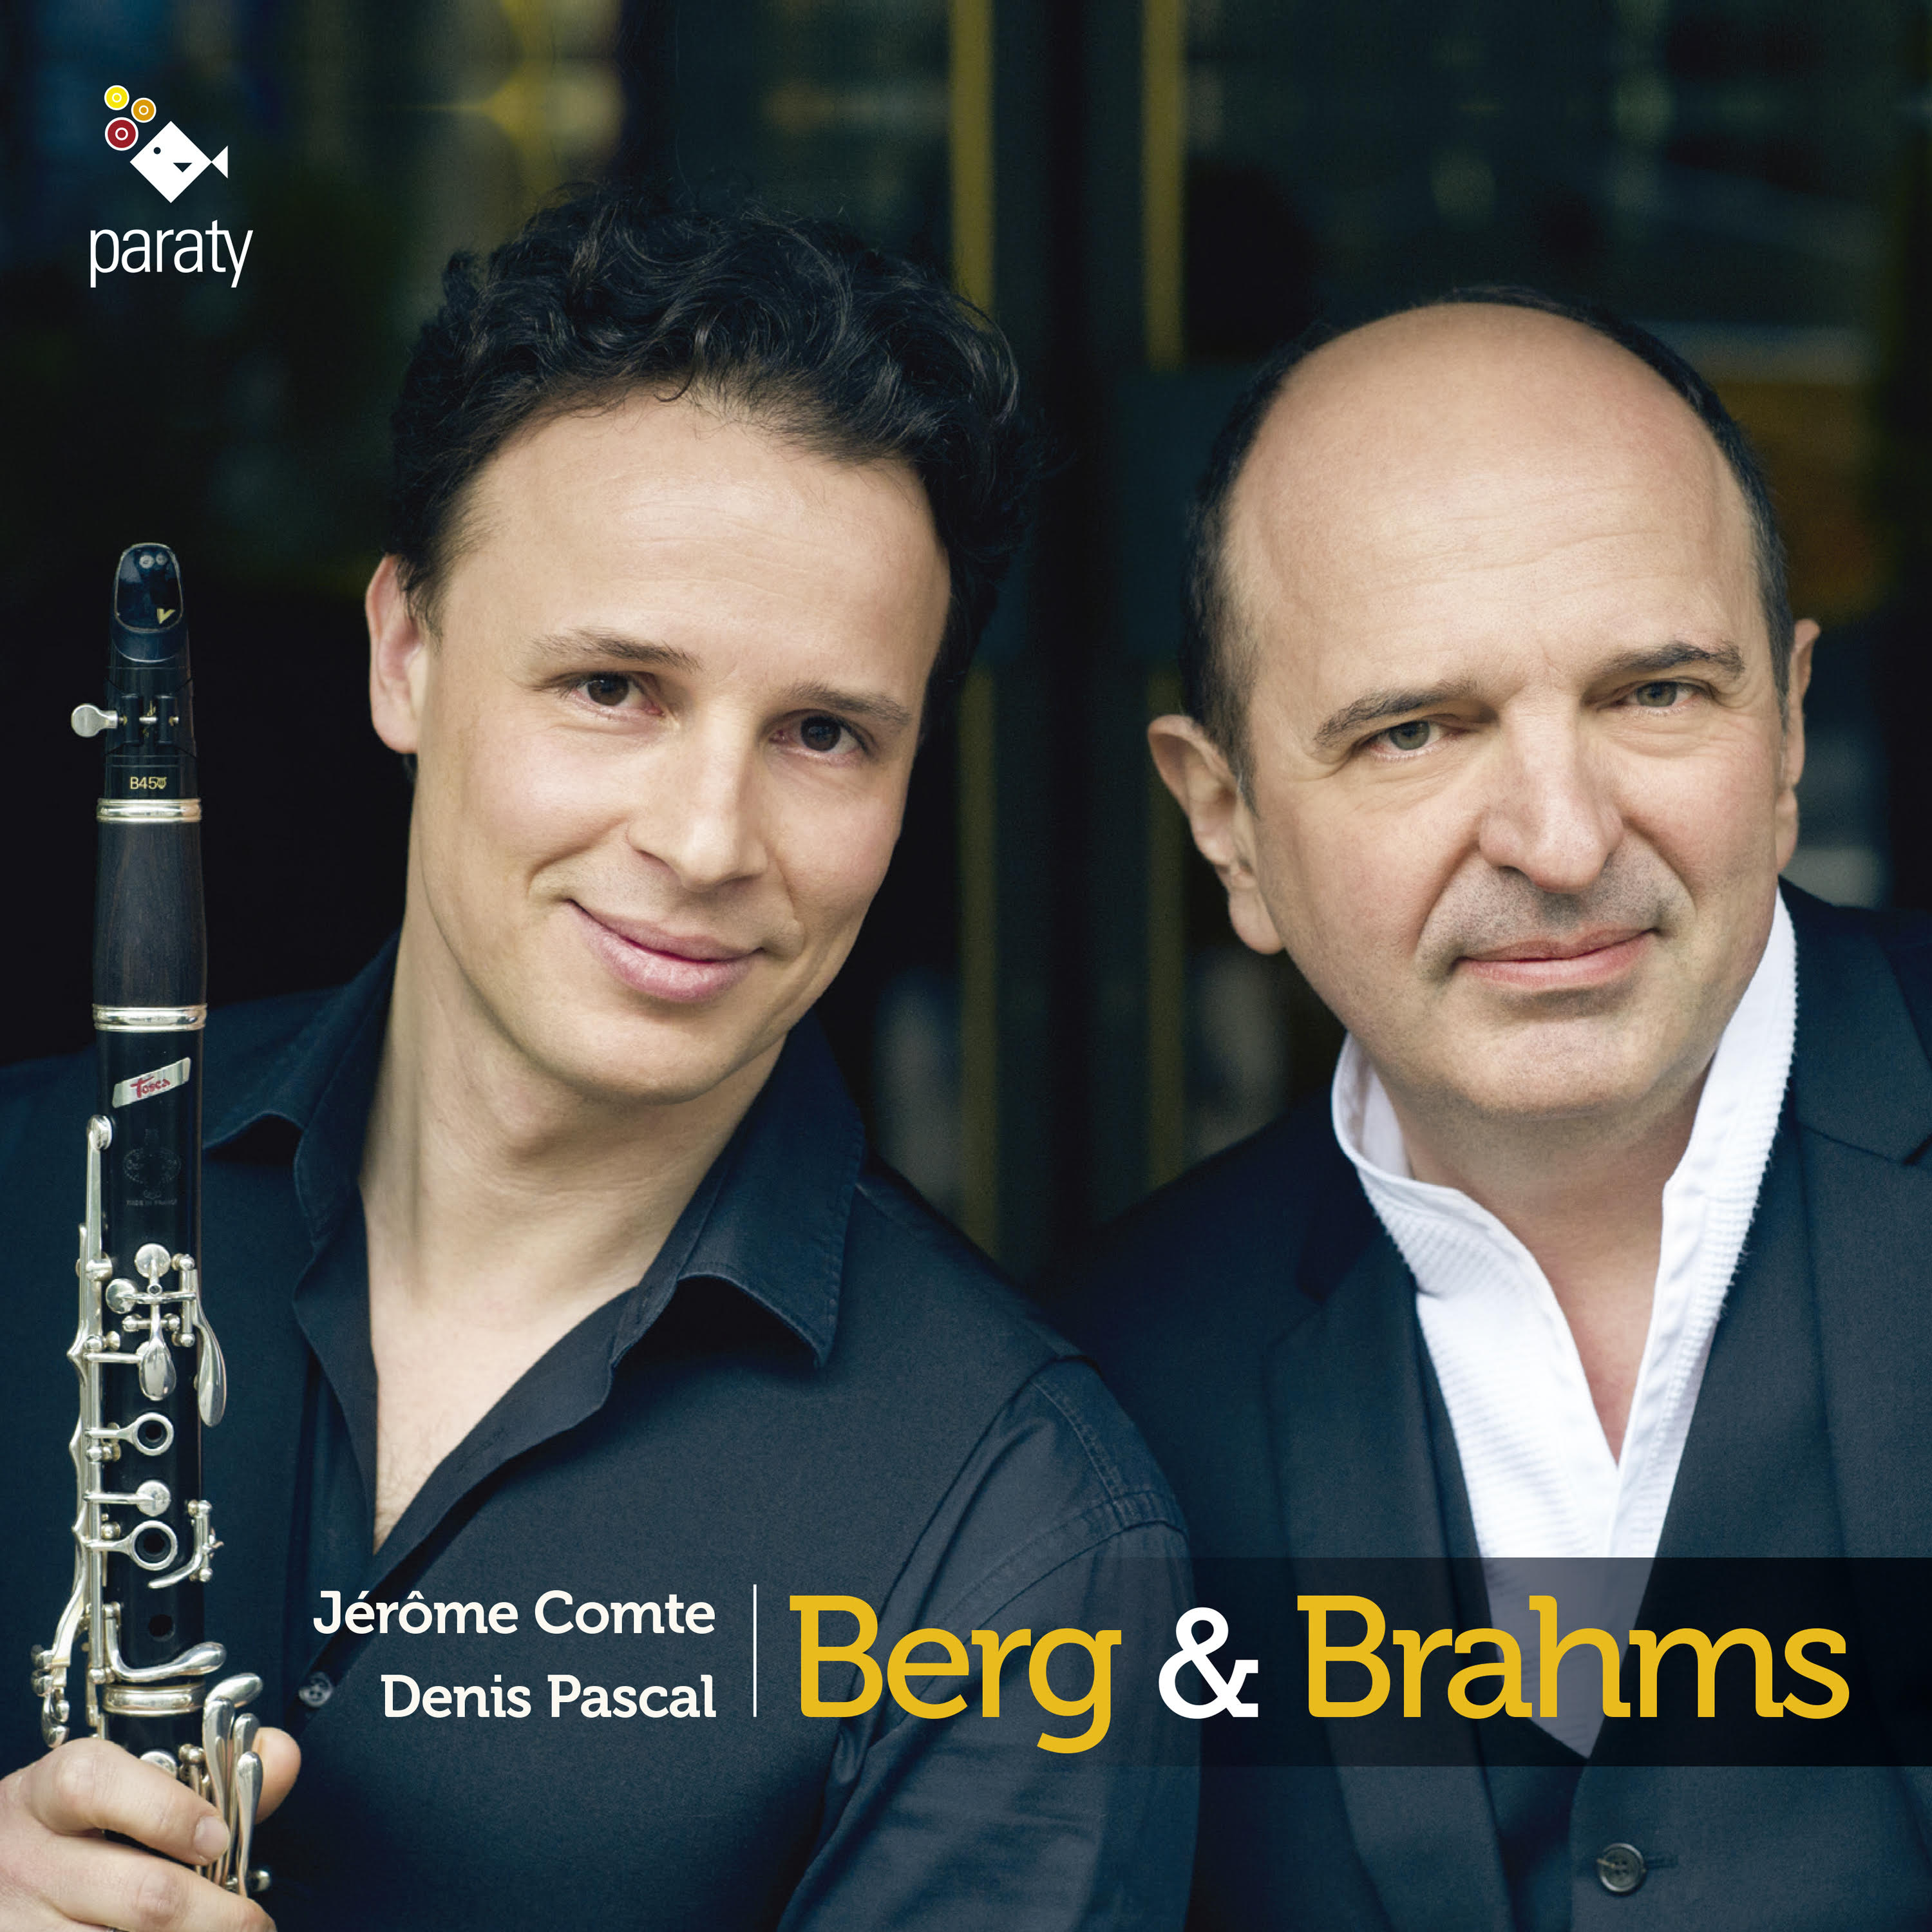 Berg & Brahms